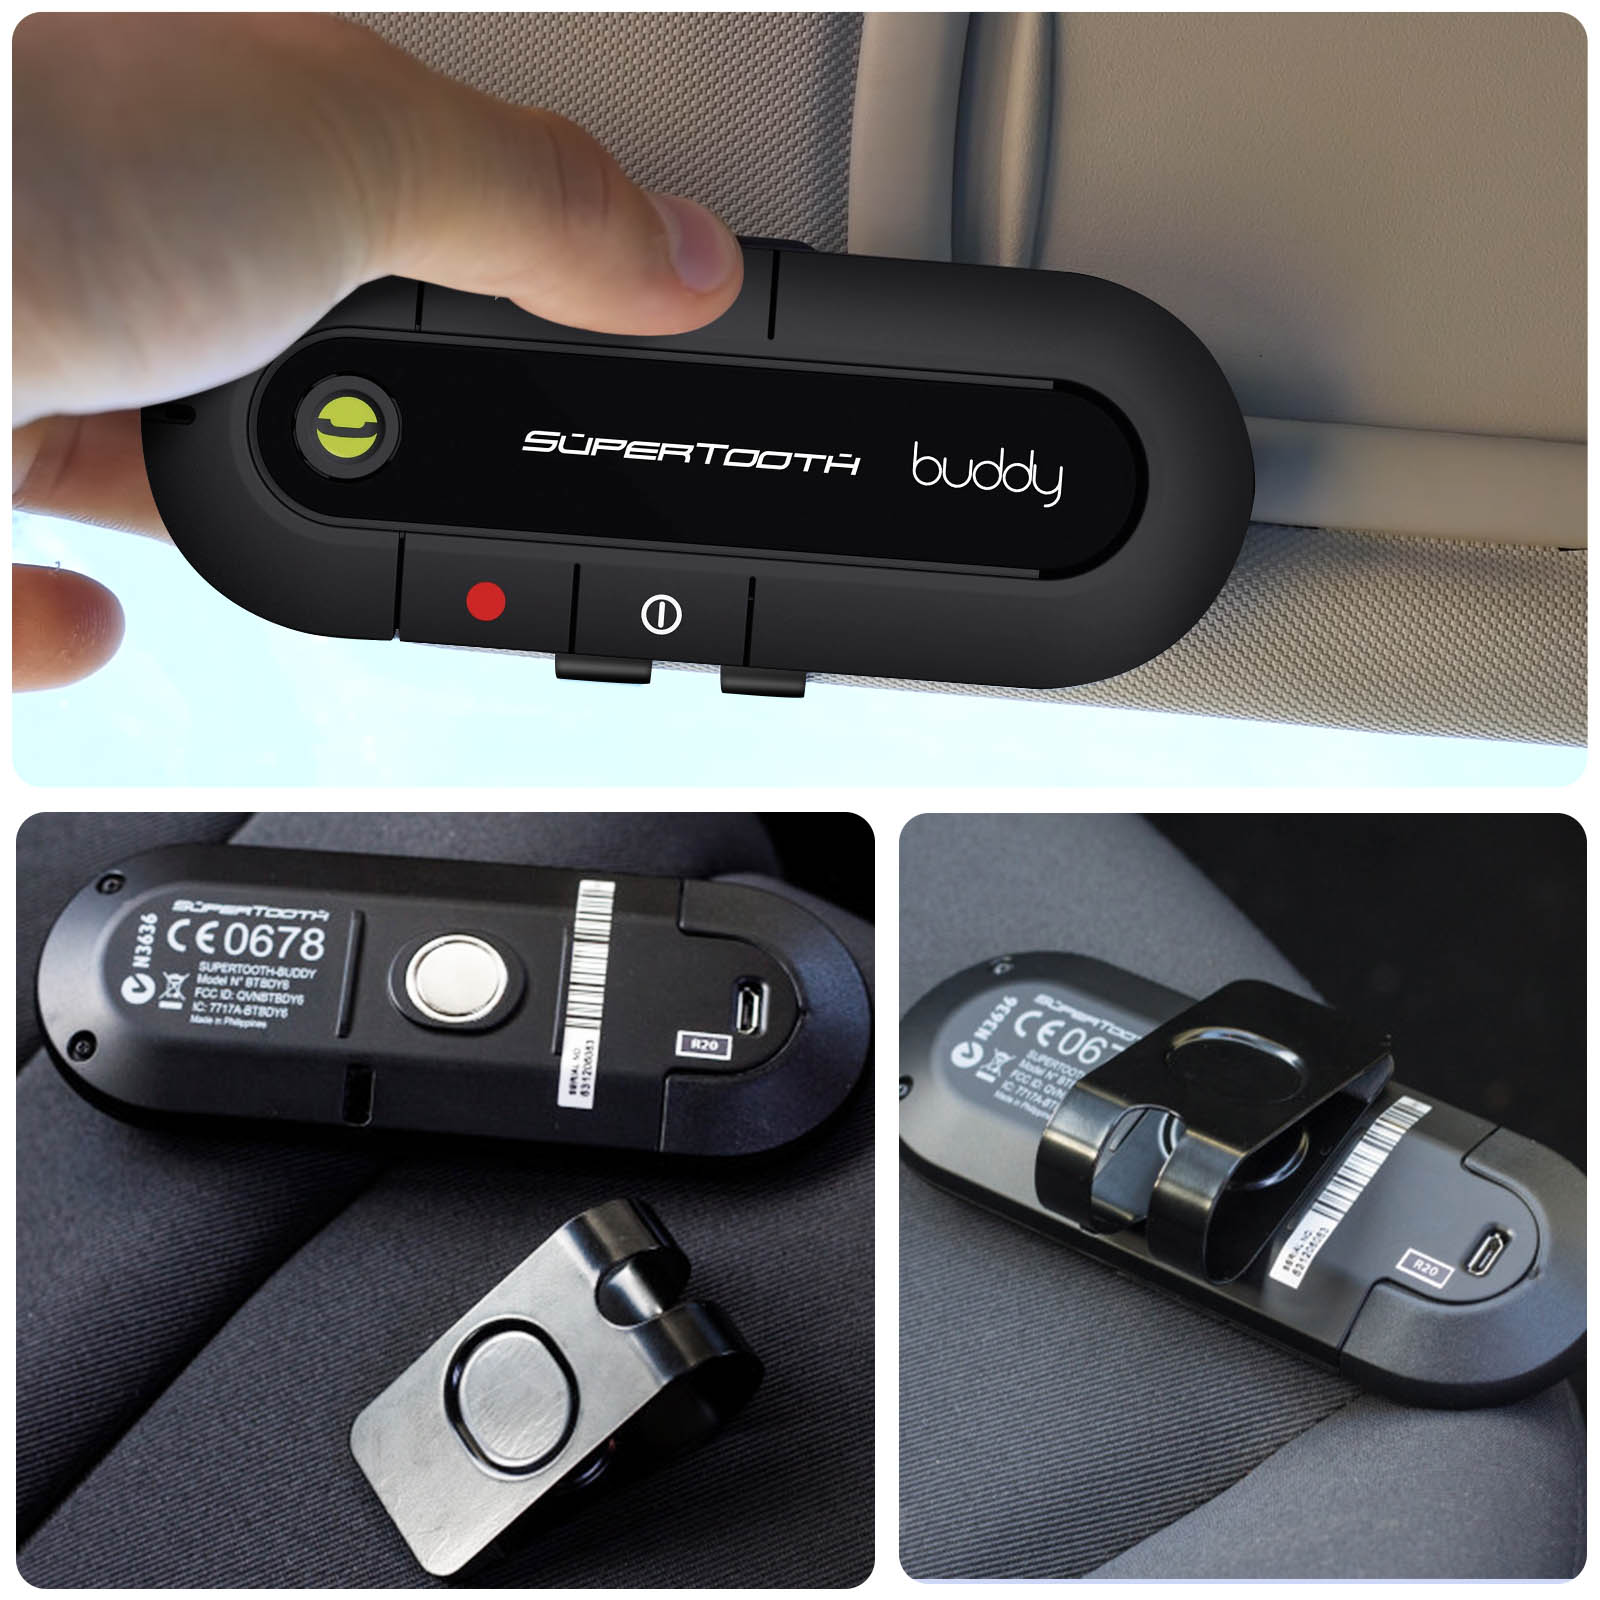 Smartwares SK-1541 Kit main-libre Bluetooth pour voiture